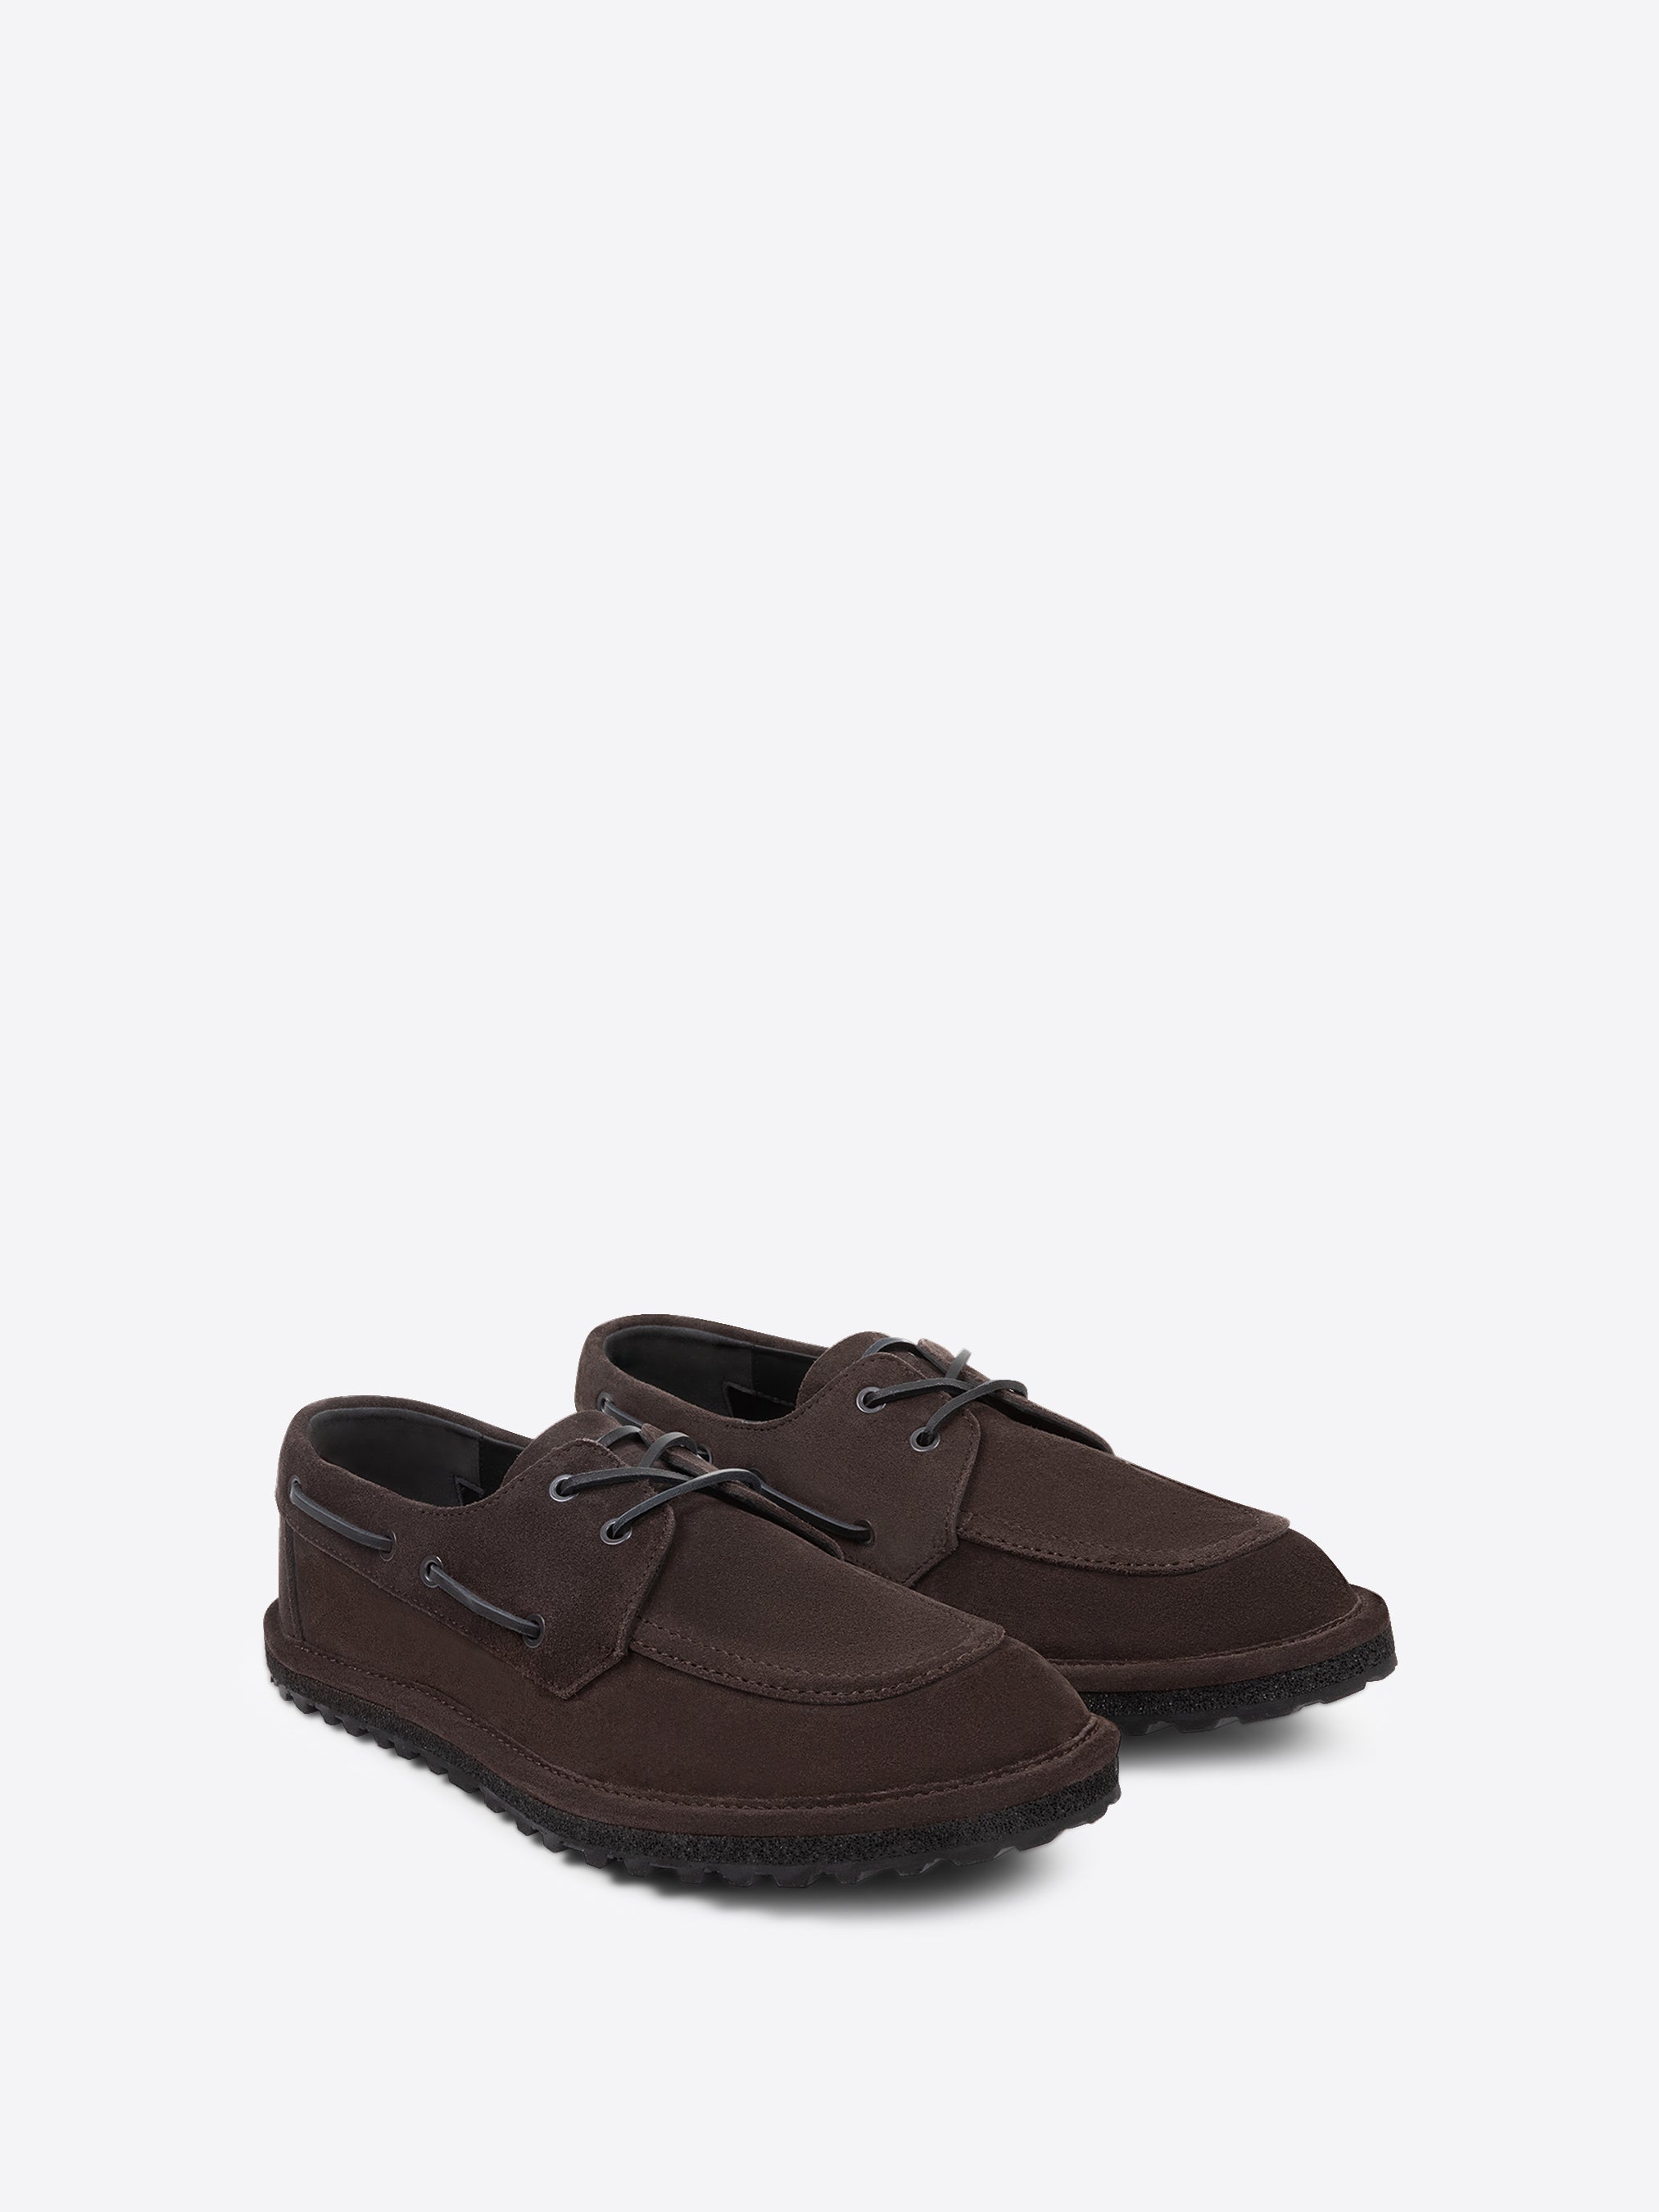 オンラインストア正規店 Dries Van Noten leather shoes ブーツ